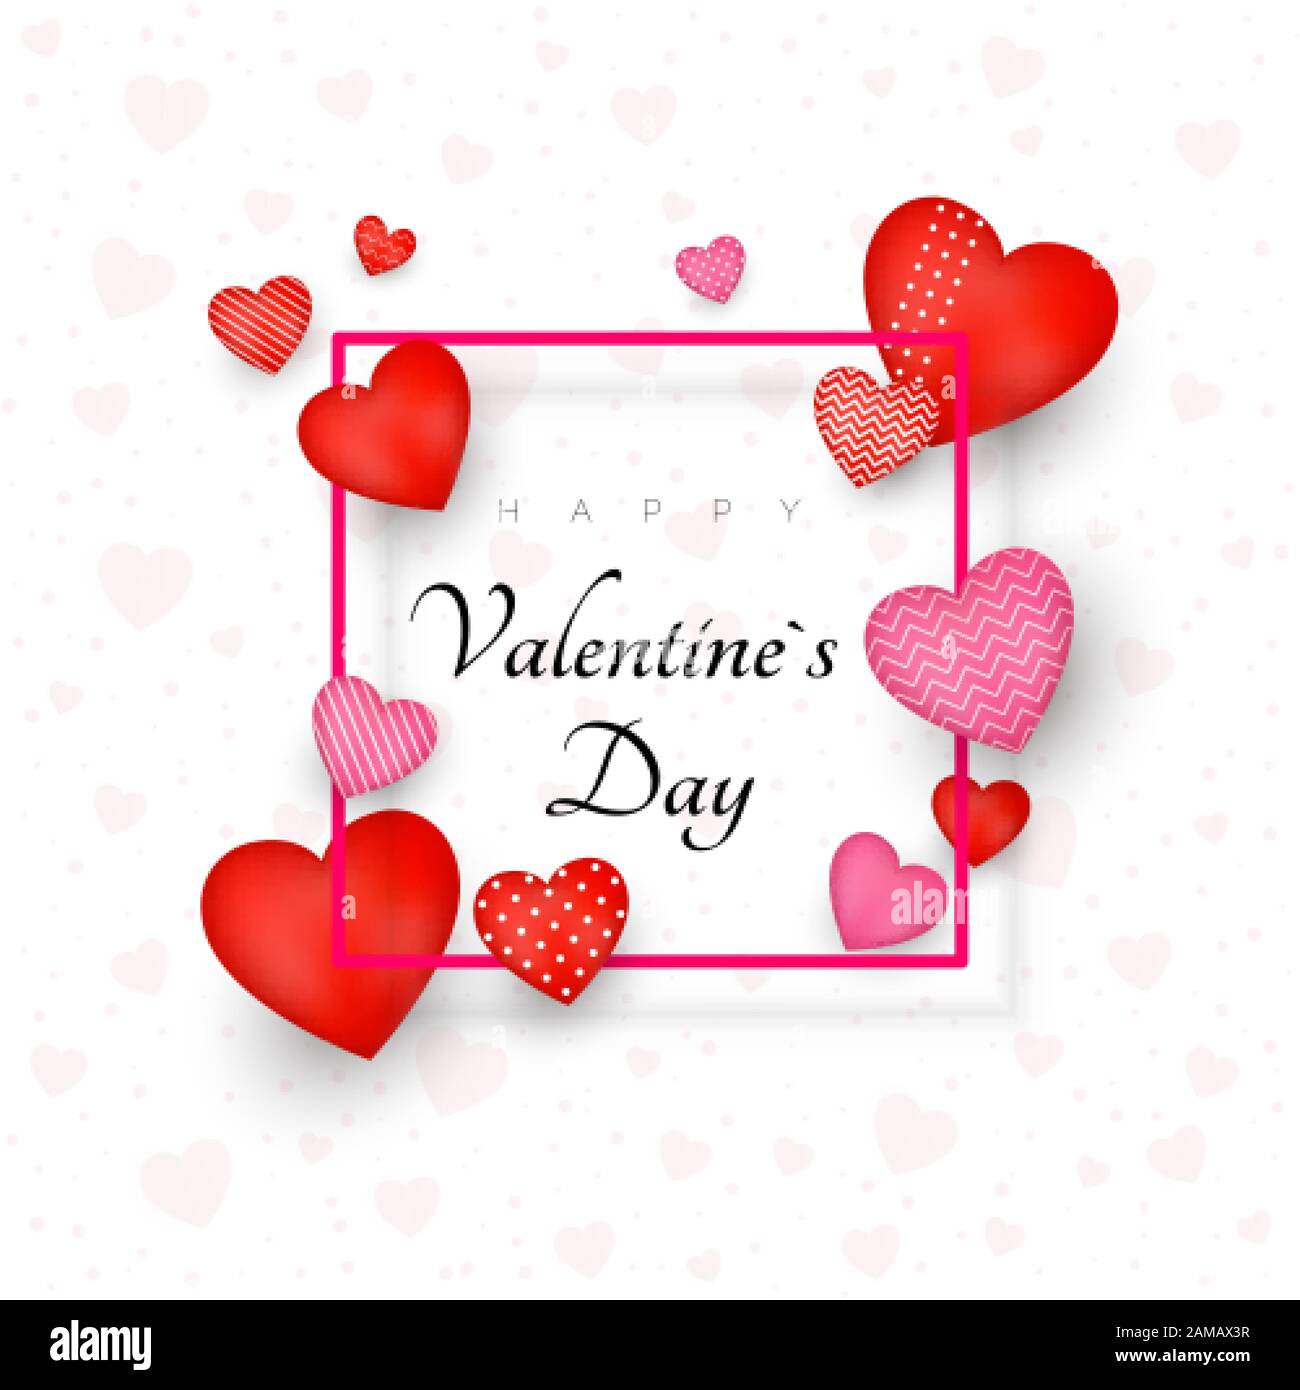 Grußkarte oder Einladungsdesign zum Valentinstag. 14. Februar Tag der Liebe und Romantik. Weihnachtsbanner mit roten Herzen. Sei mein Valentinstag. Vecto Stock Vektor